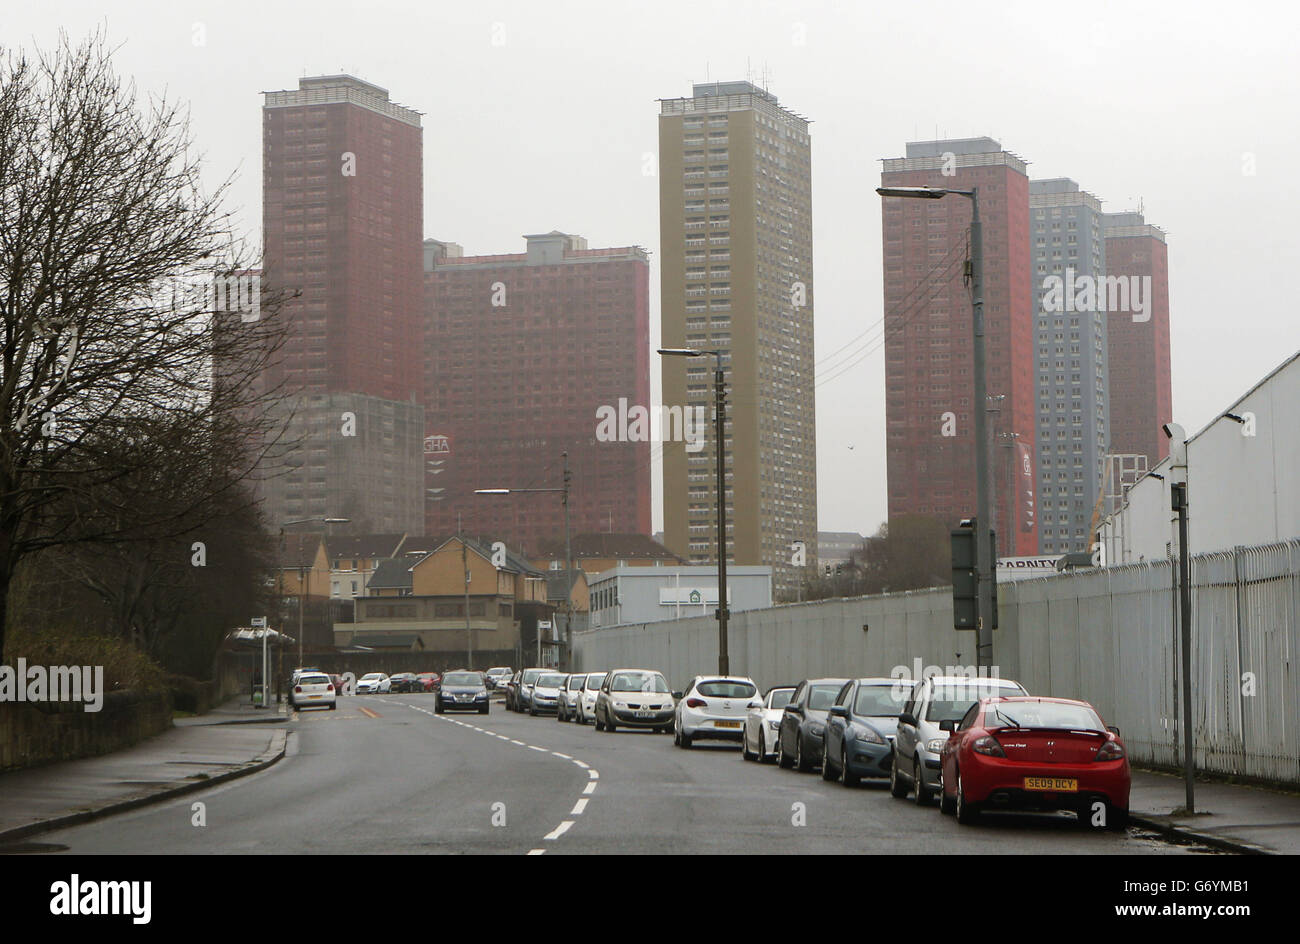 Les appartements de la Red Road à Glasgow qui seront démolis en direct lors de la cérémonie d'ouverture des Jeux du Commonwealth. Banque D'Images